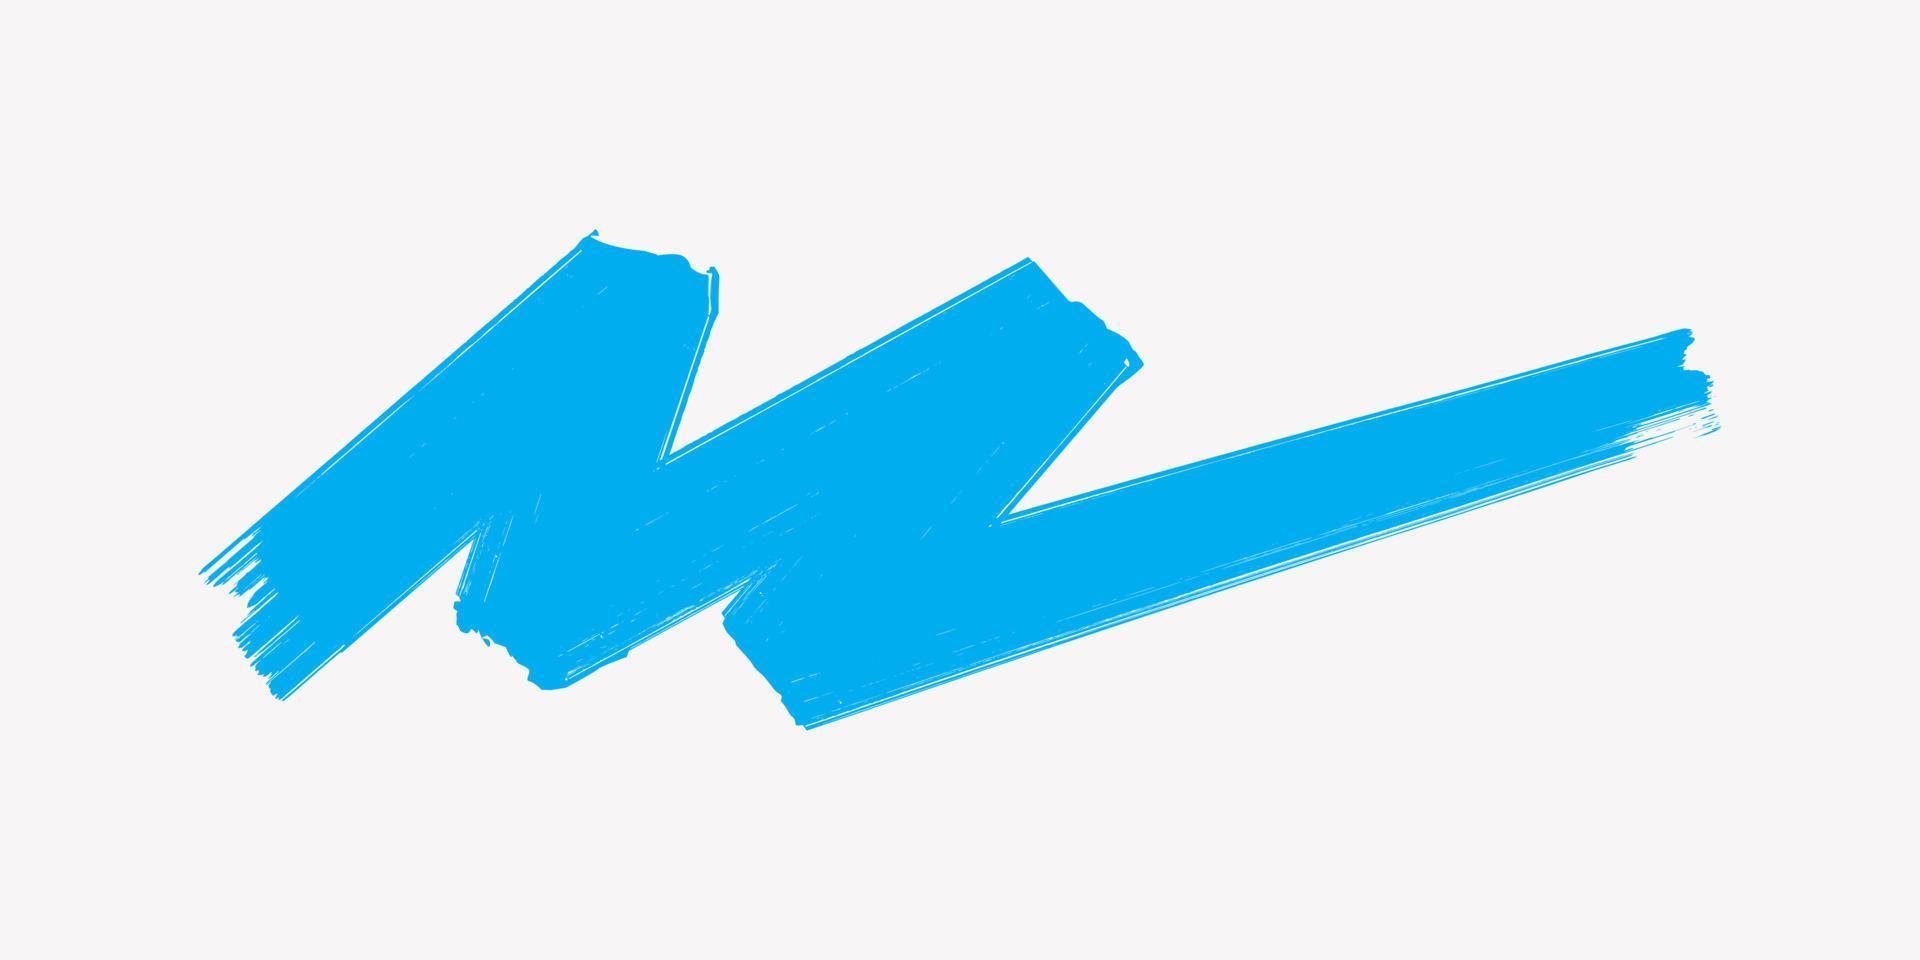 Blue Brush Stroke, Marker Pen Illustration Isolated on White Background. Hand Drawn Vector Design.